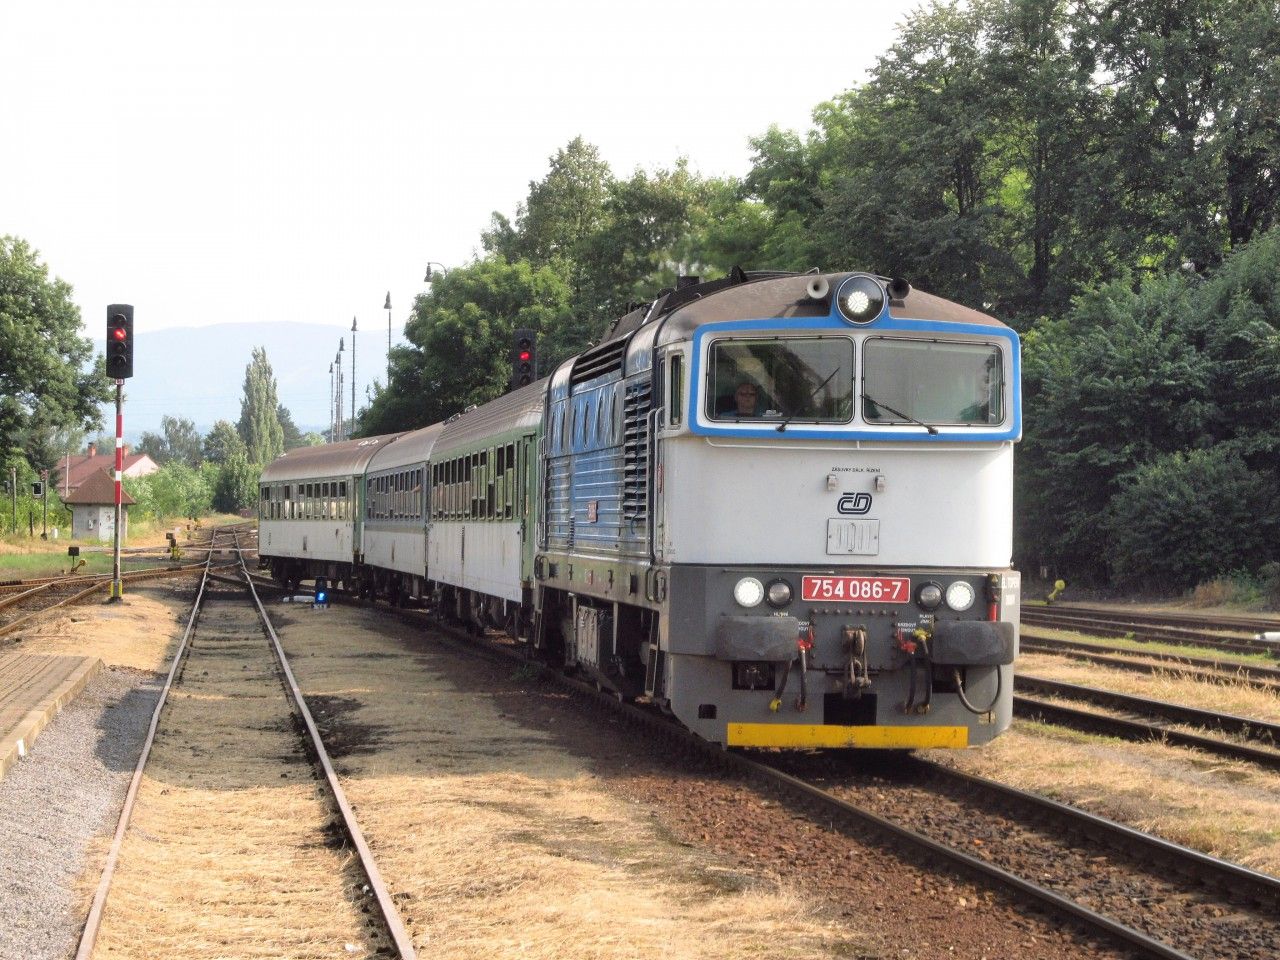 Os vlak z Frenttu do Ostravy (s lok. 754.086) pijd do st. Frdek-Mstek, 27. 8. 2017